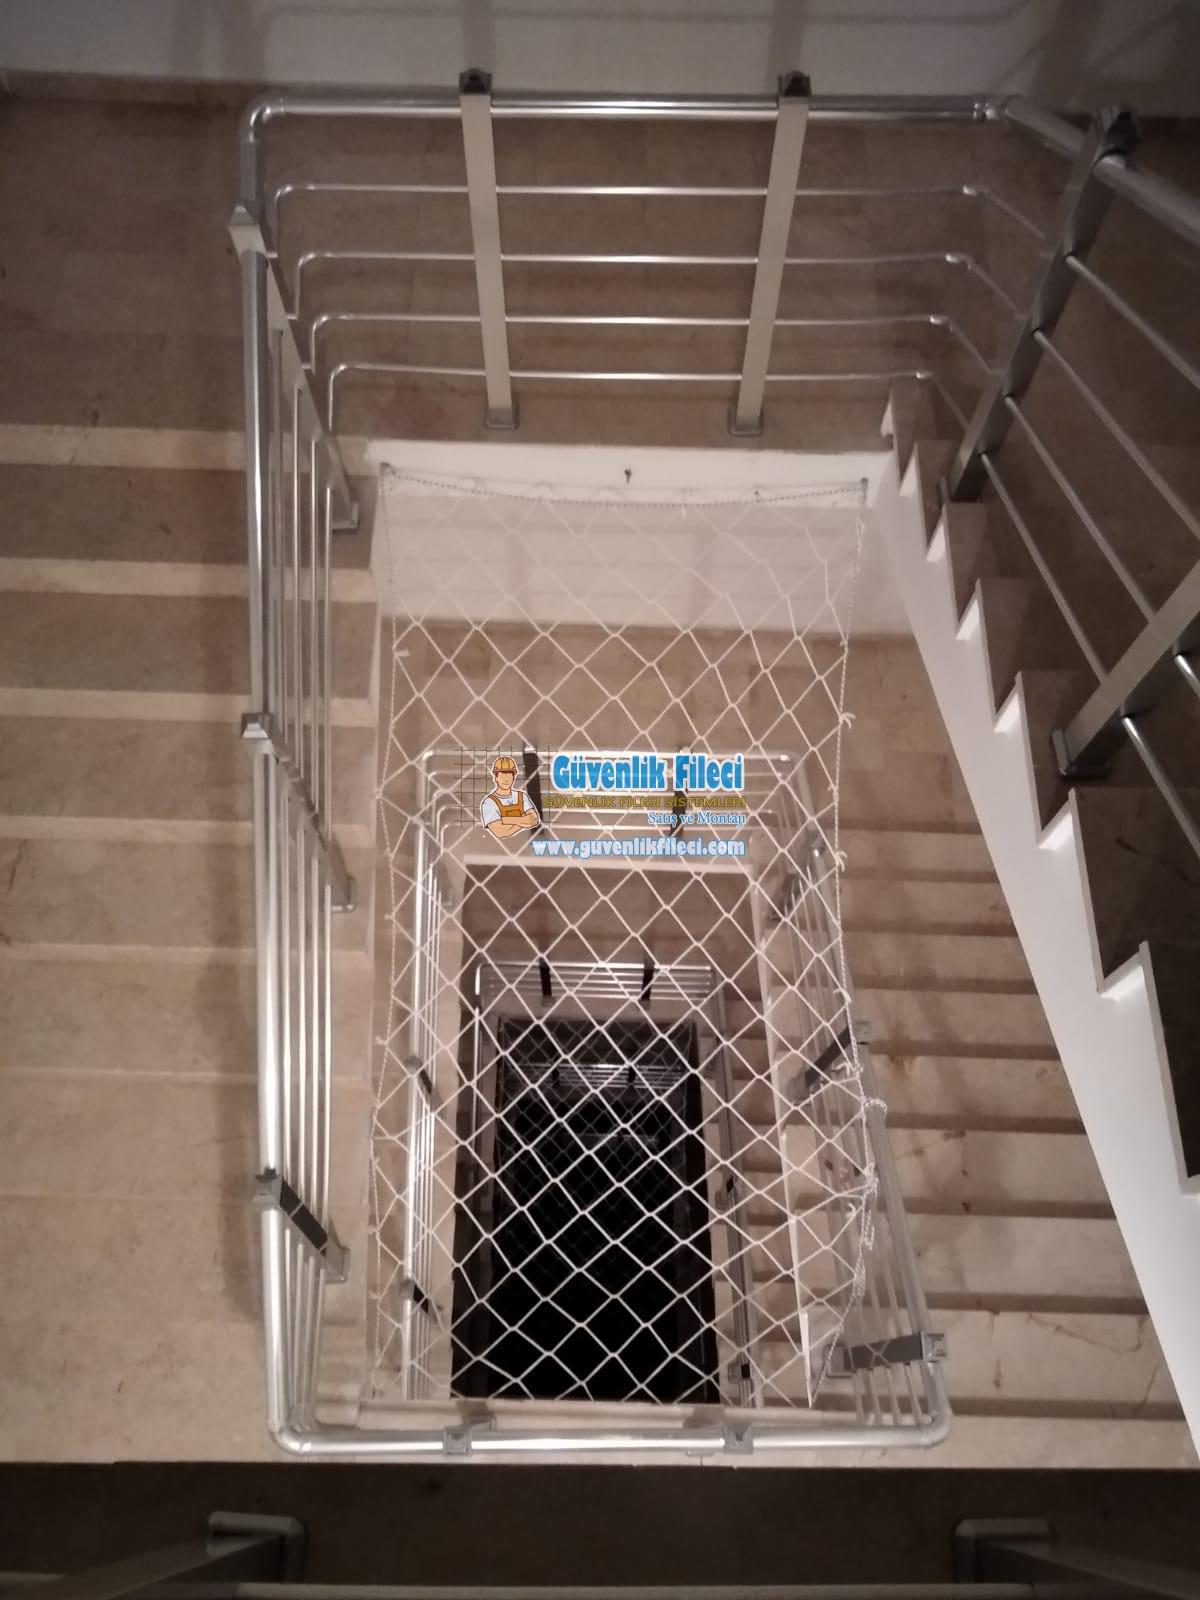 Ankara Haymana ELVANKENT OĞUZLAR MAH. Merdiven Boşluğu Filesi Projesi Devam Ediyor.